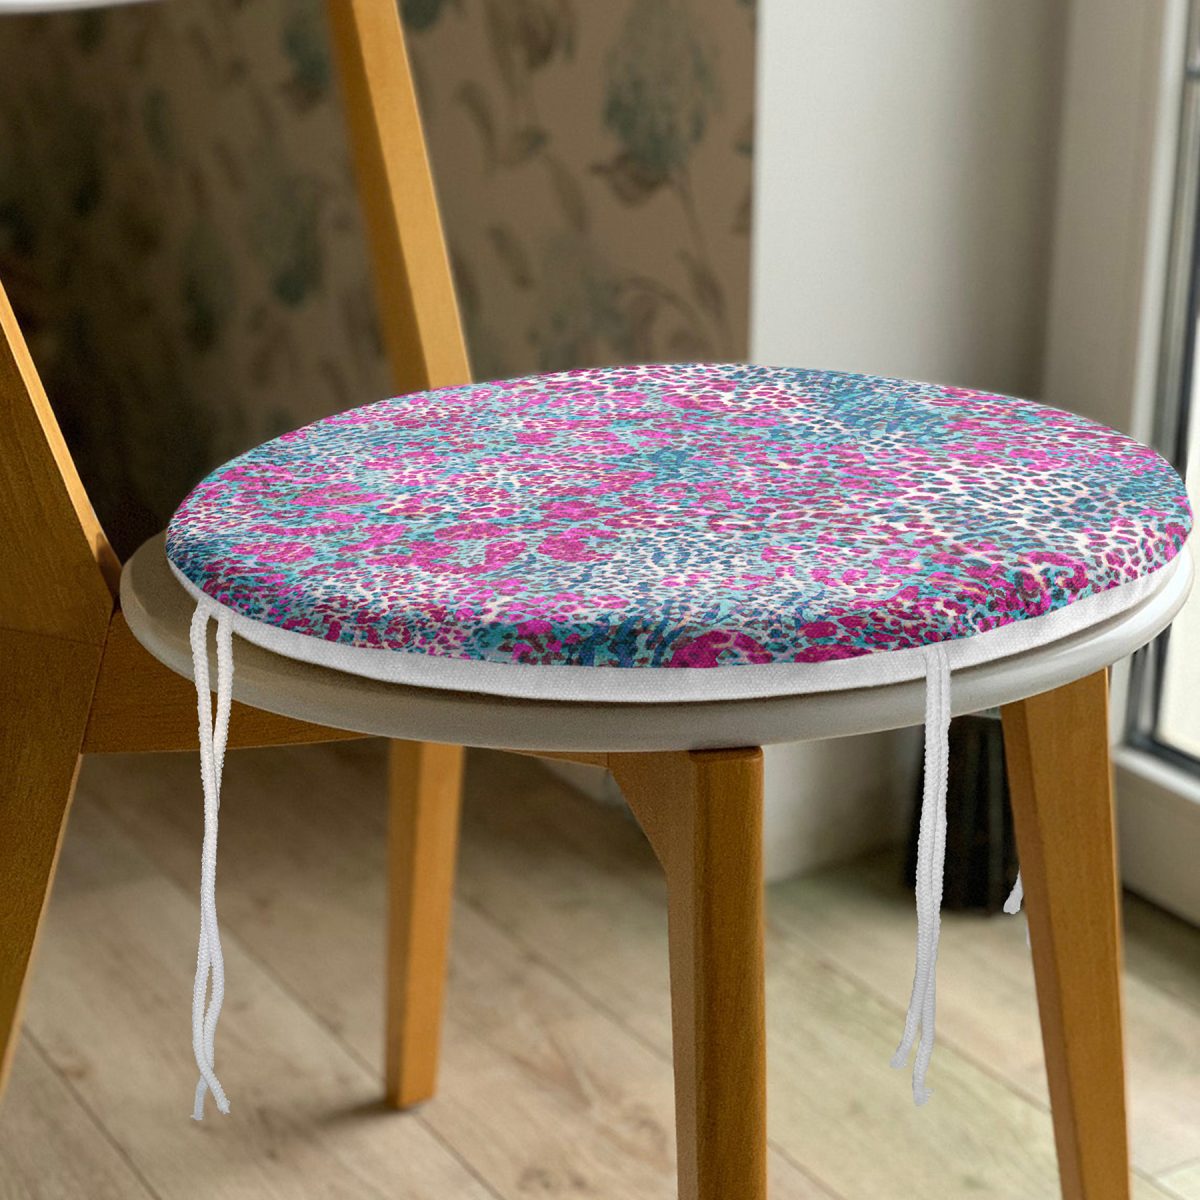 Renkli Leopar Desenli Özel tasarım Dijital Baskılı Modern Yuvarlak Fermuarlı Sandalye Minderi Realhomes